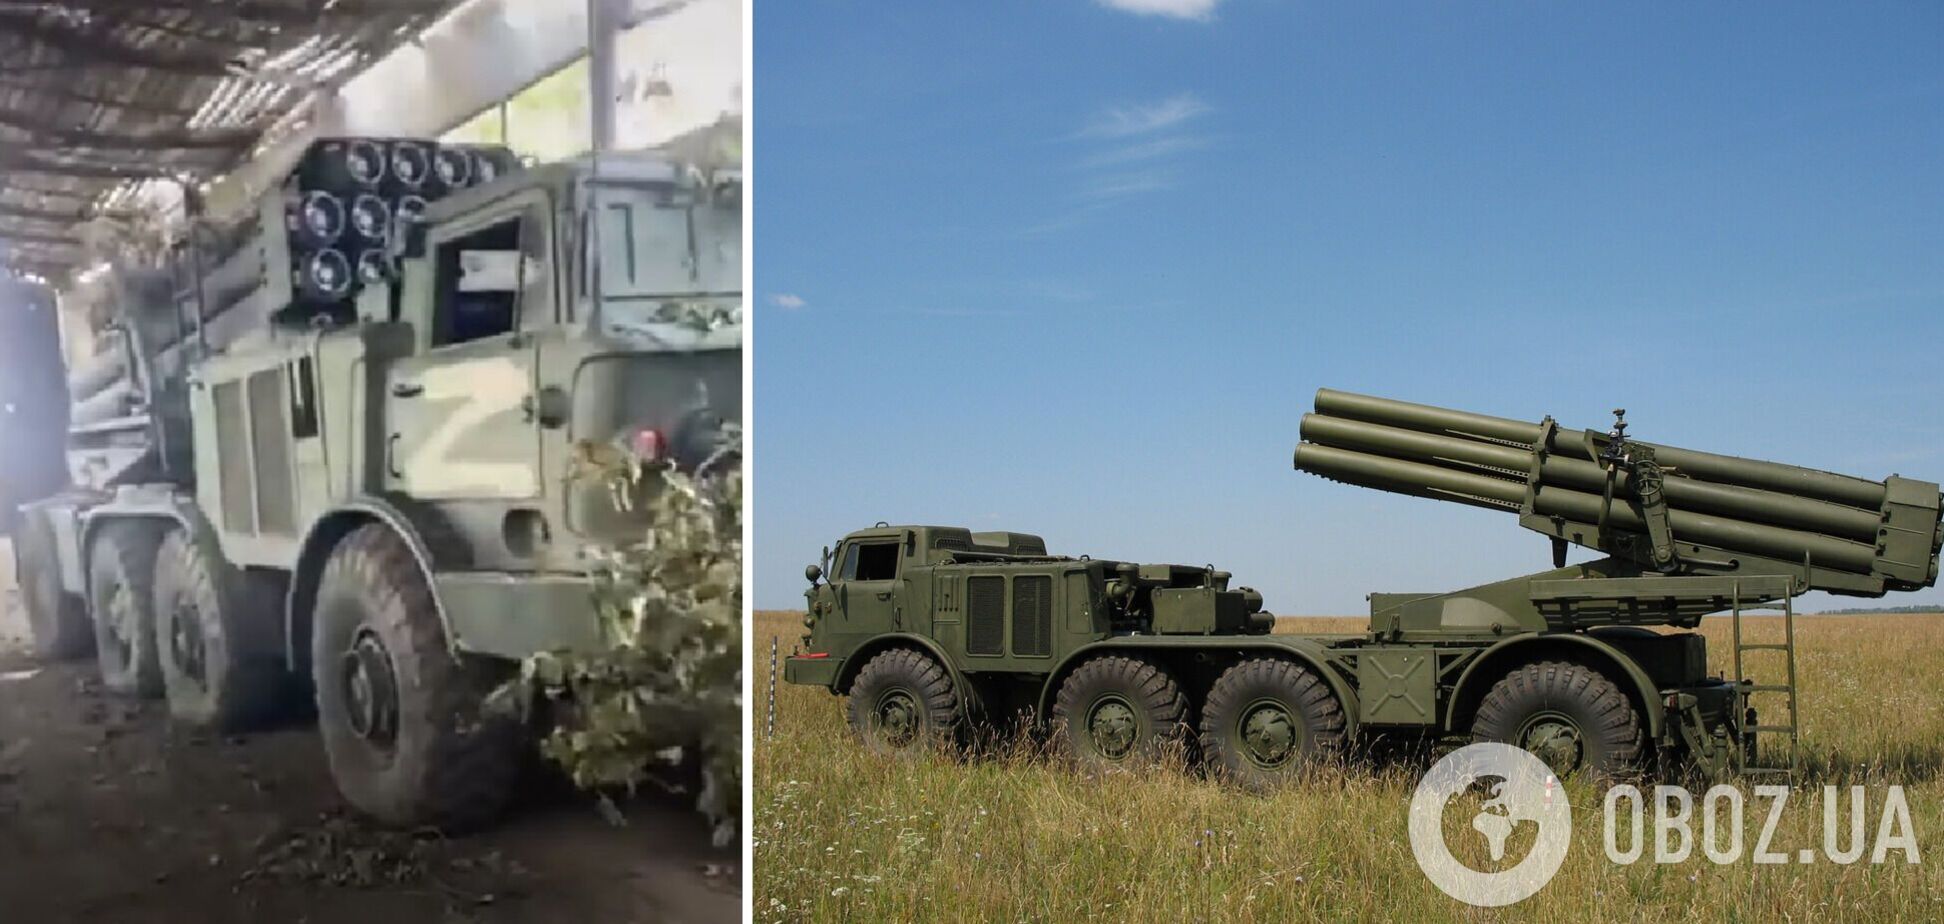 Украинские бойцы захватили полностью заряженный вражеский 'Ураган': будет работать по оккупантам. Видео